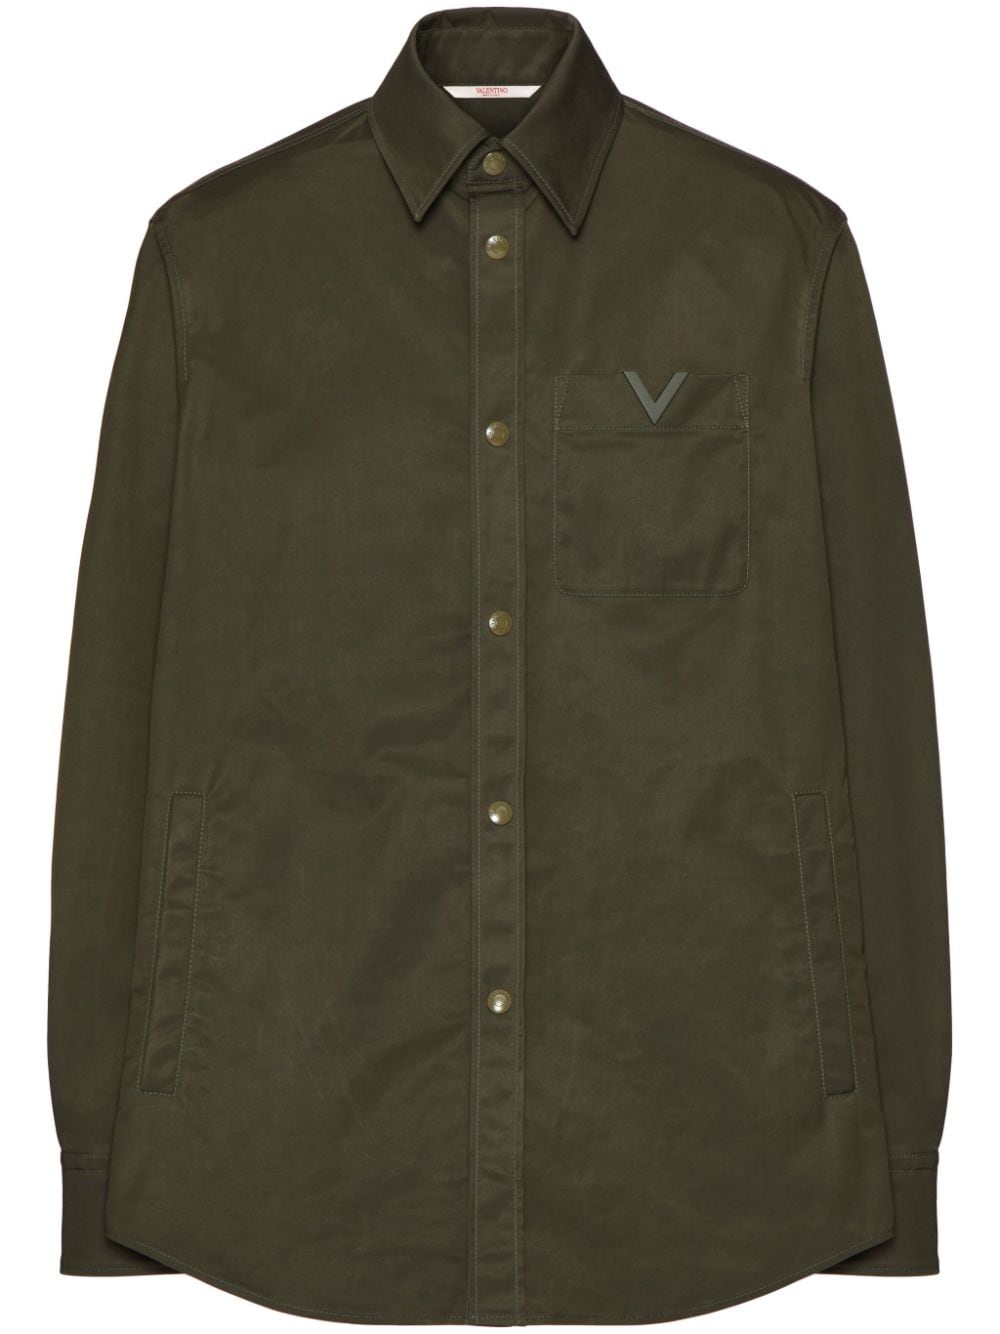 V-detail shirt jacket<BR/><BR/><BR/>